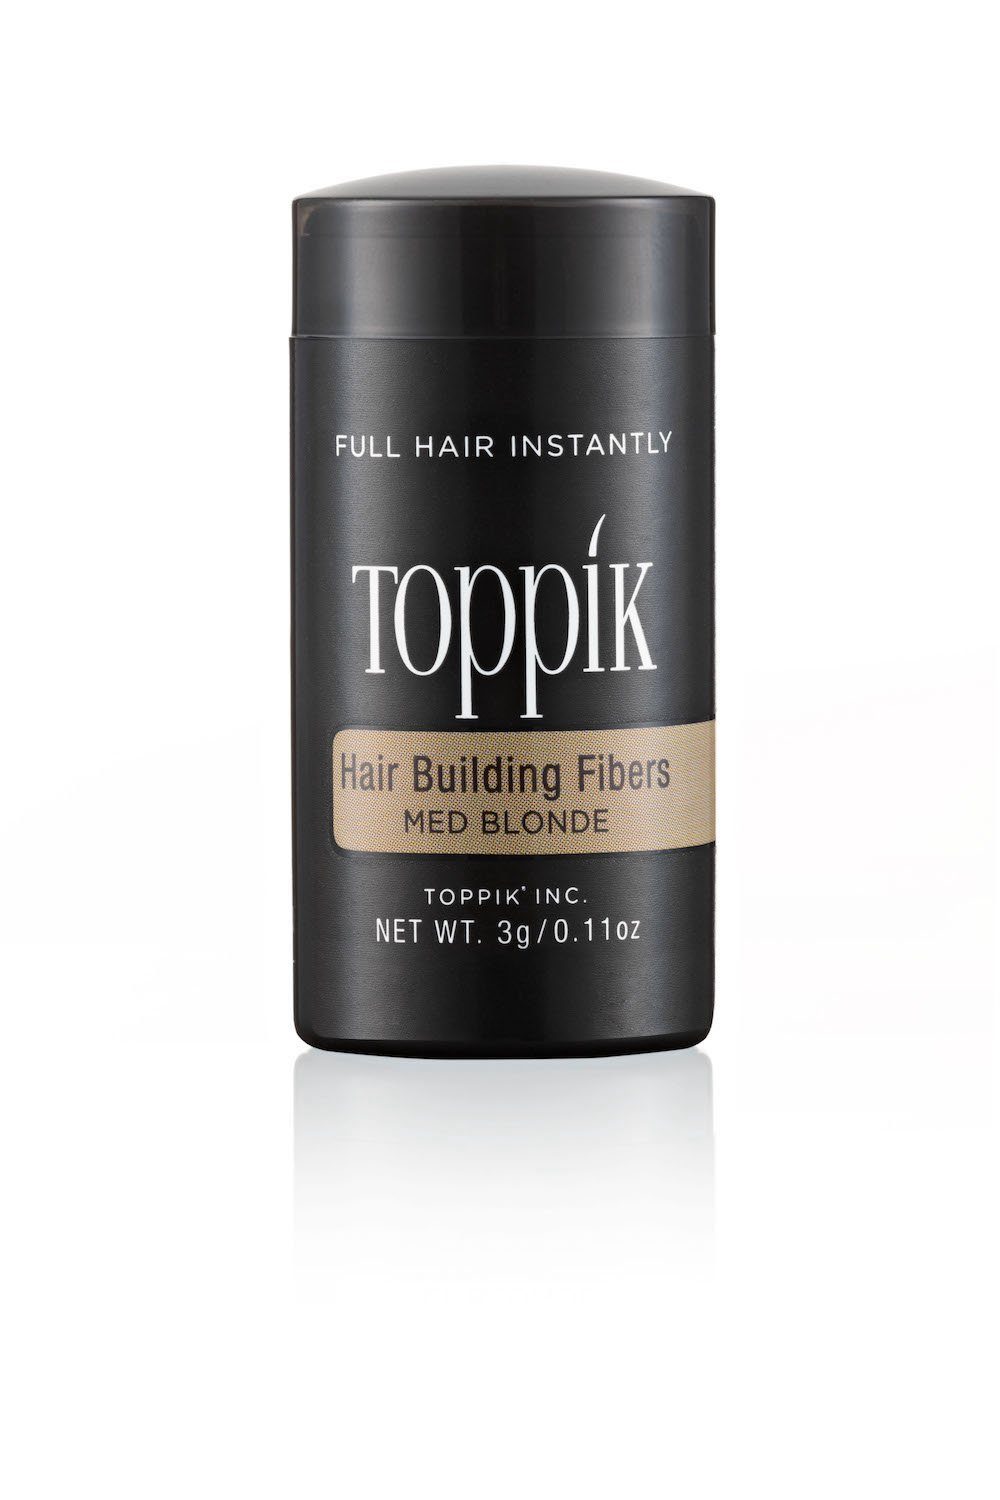 TOPPIK Haarstyling-Set TOPPIK 3g. - Haarfasern, Streuhaar, Schütthaar, Hair Fibers Haarverdichtung, Puder, Mittelblond